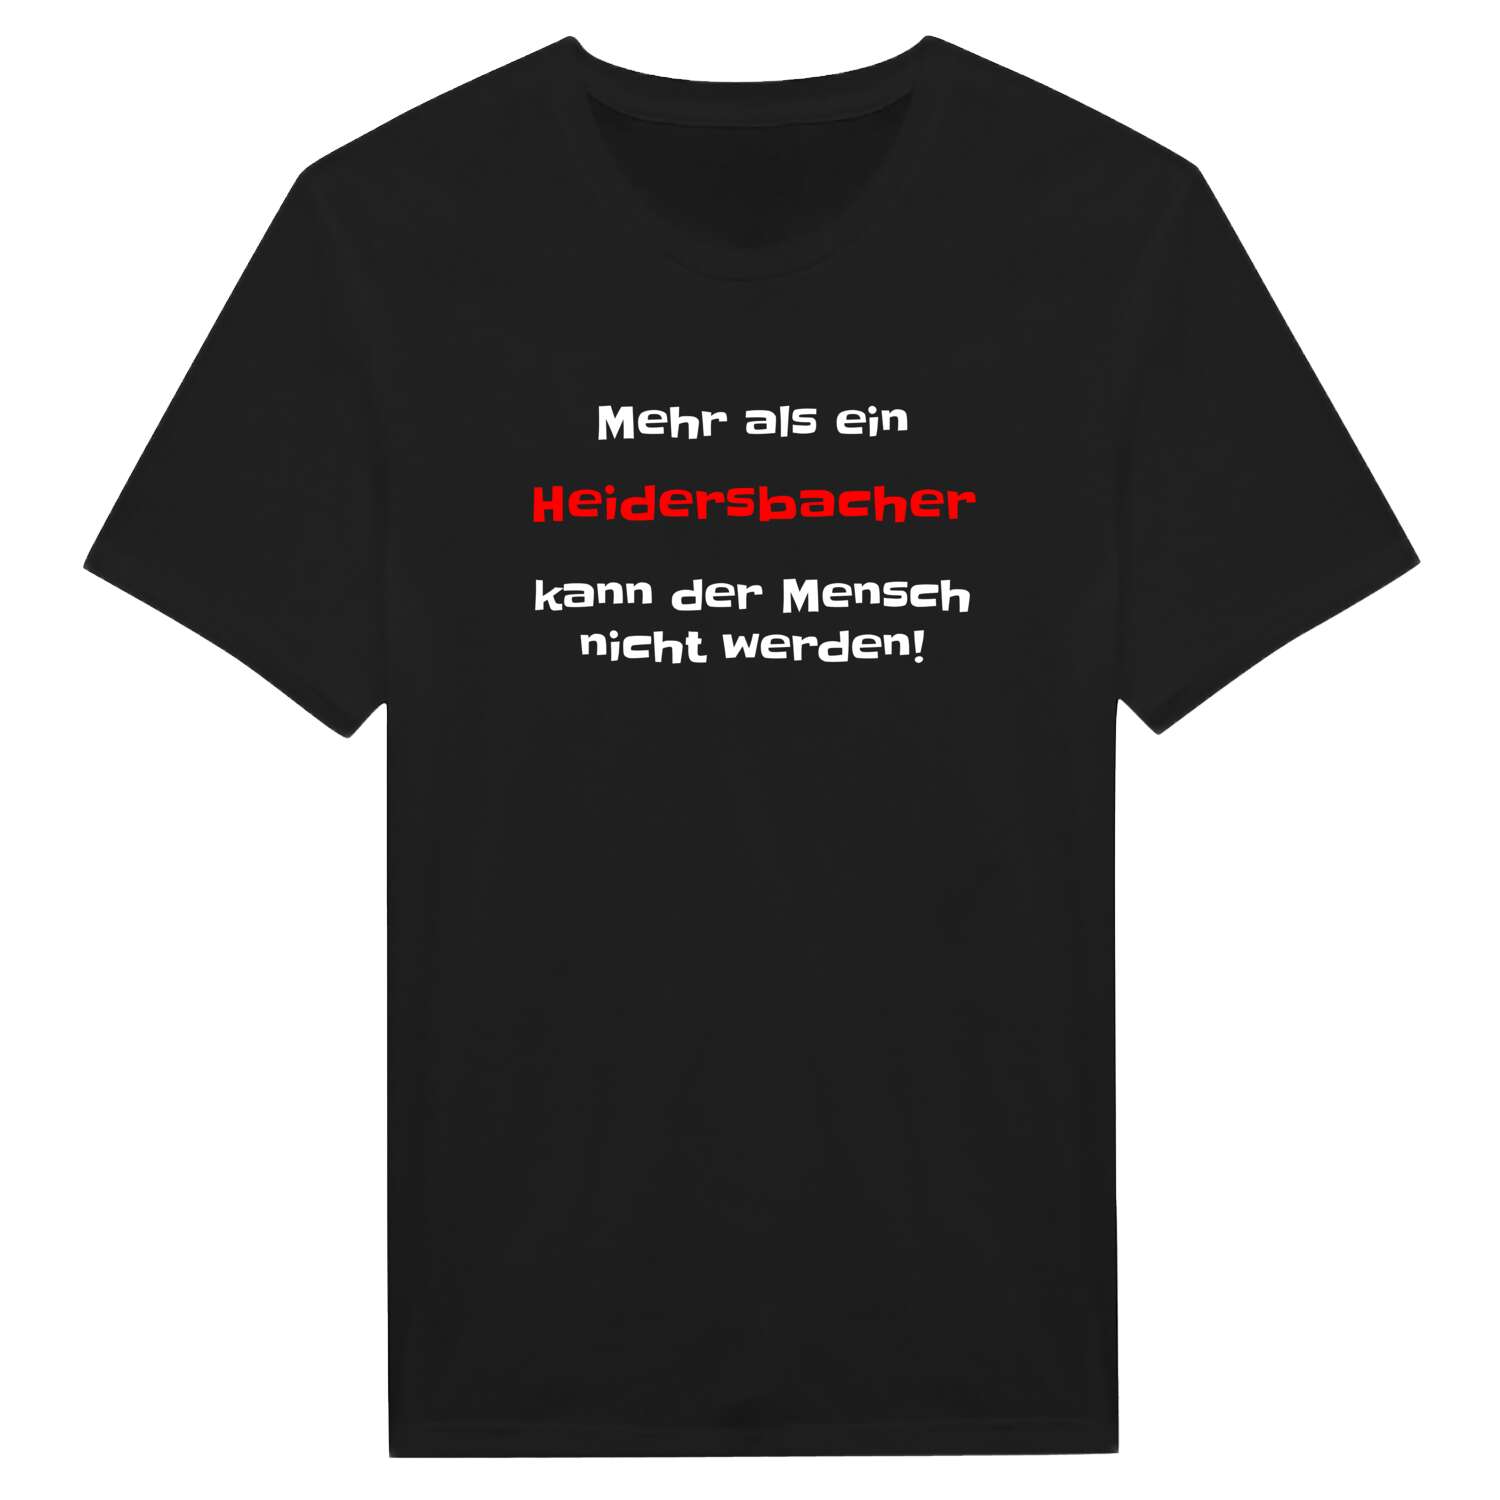 Heidersbach T-Shirt »Mehr als ein«